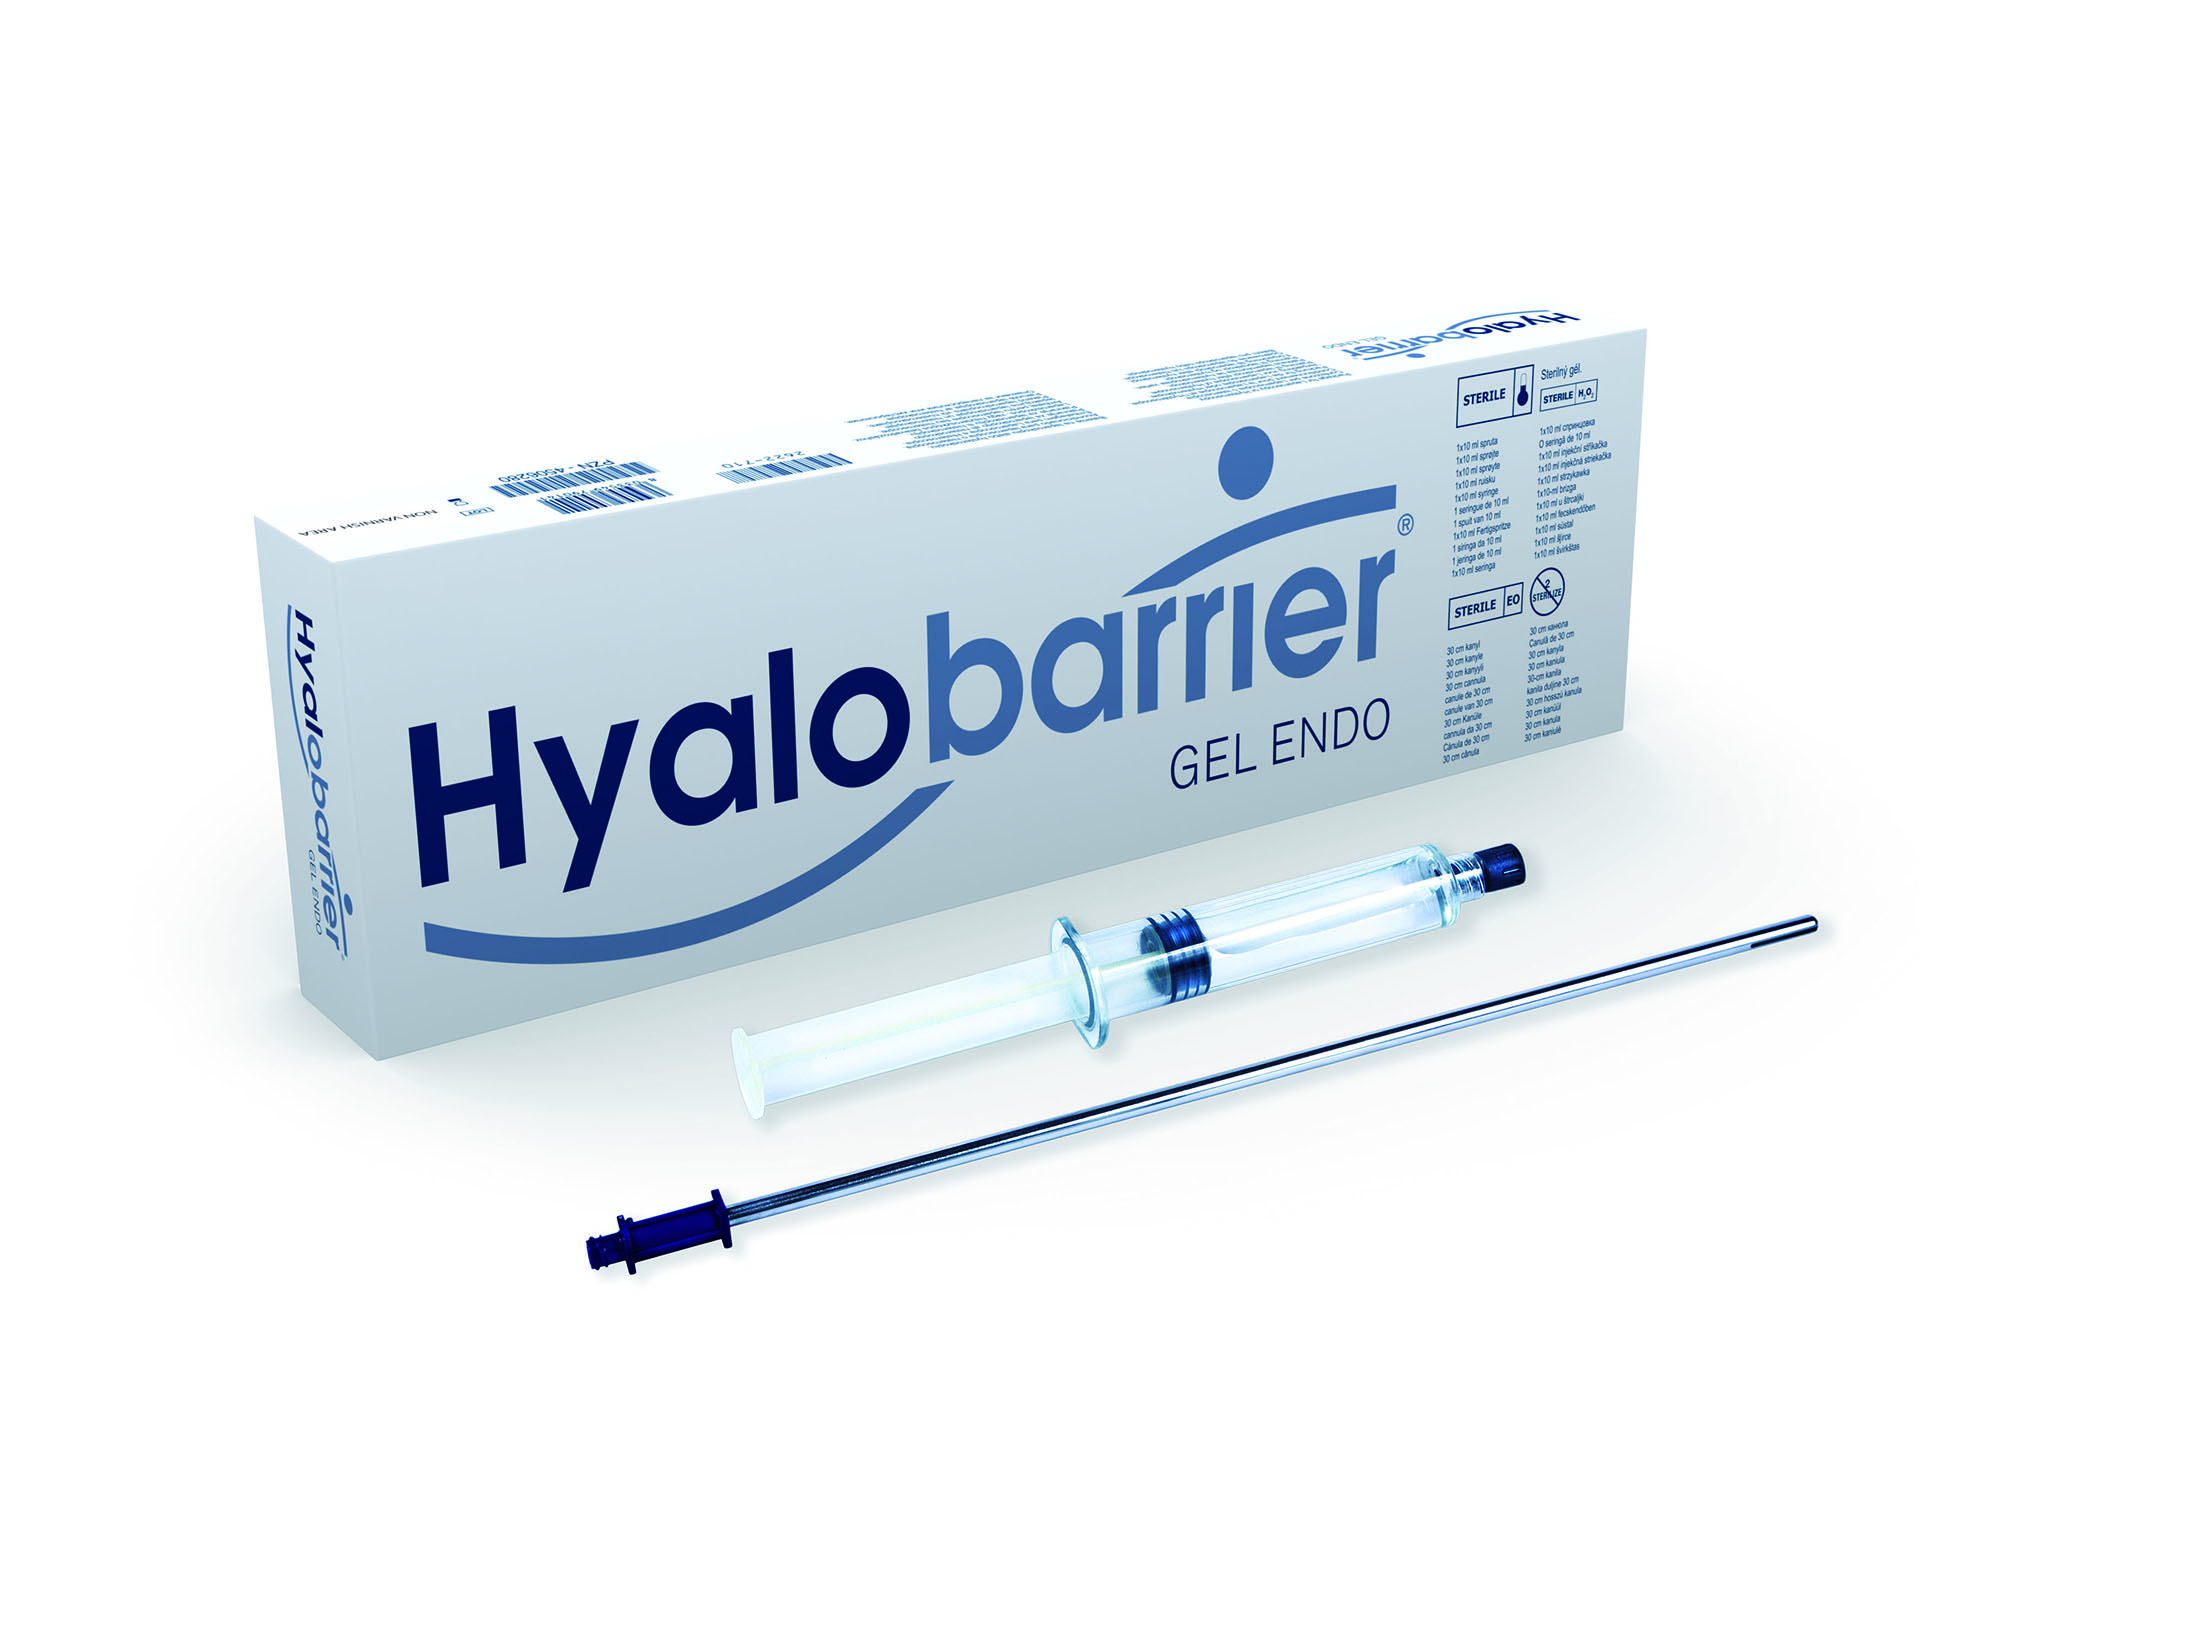 nordic-pharma-gmbh-hyalobarrier-gel-endo